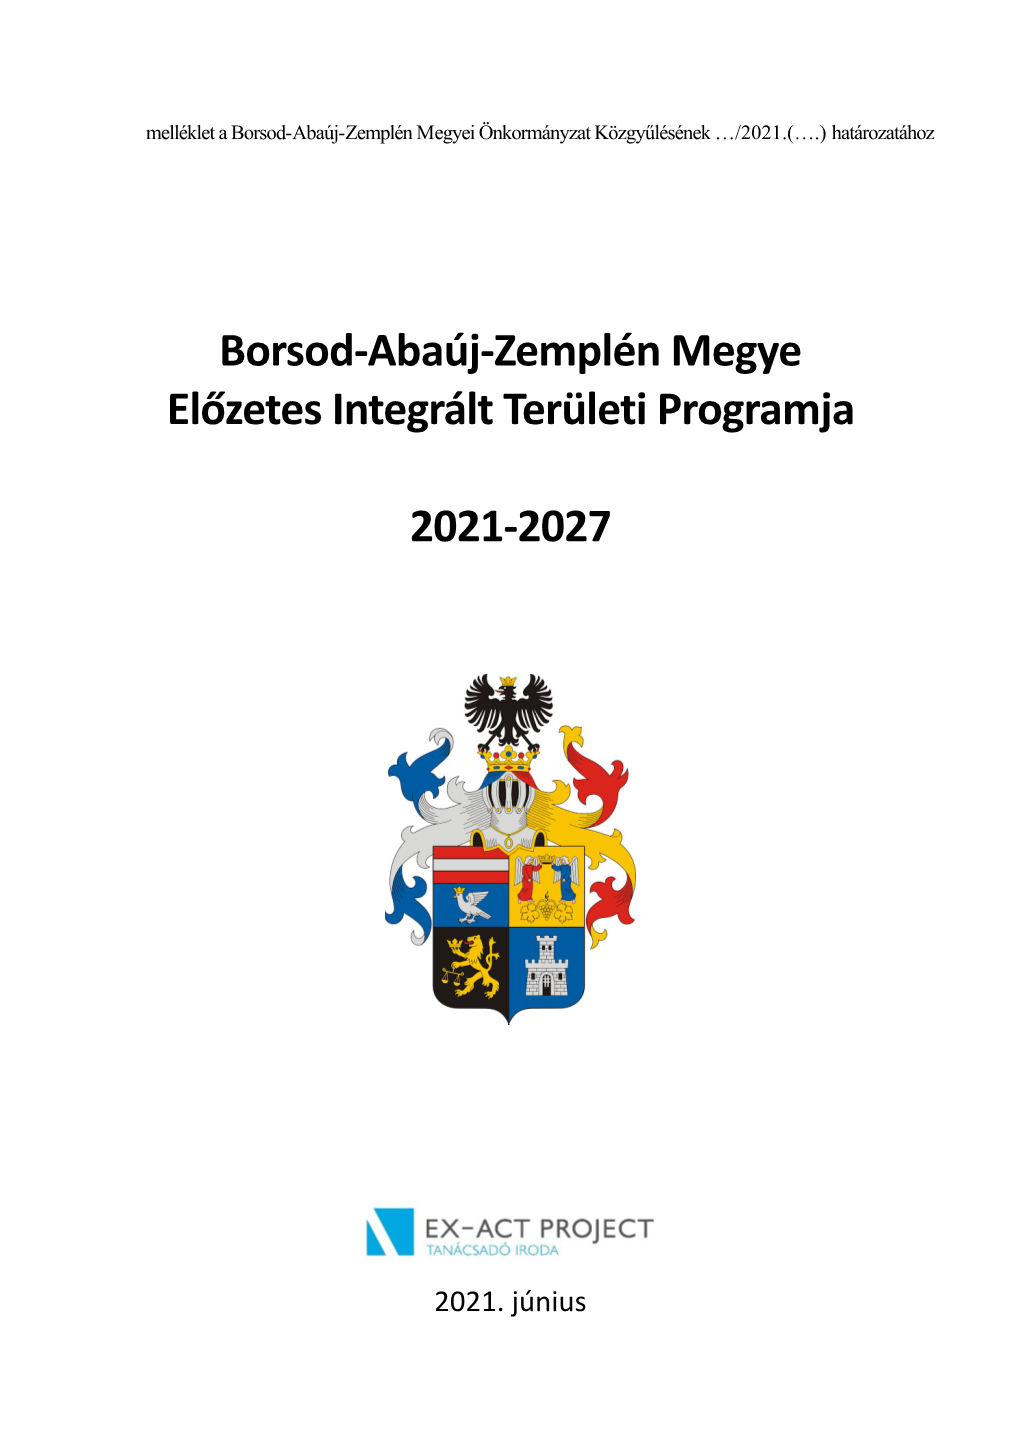 Borsod-Abaúj-Zemplén Megye Előzetes Integrált Területi Programja